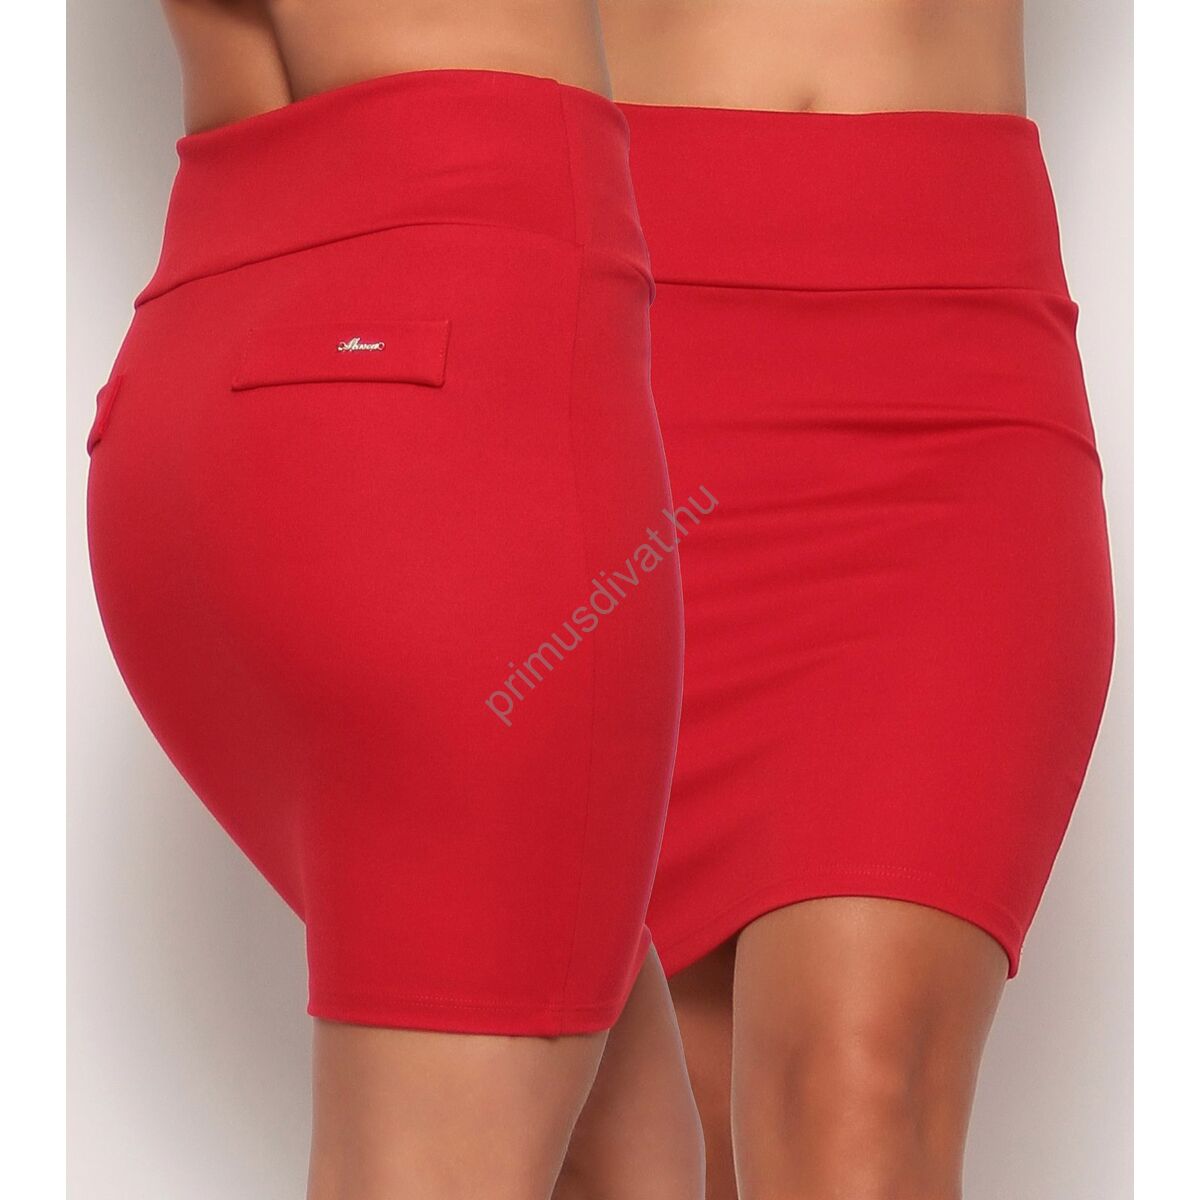 Masca Fashion magas derekú, széles gumipántos elasztikus piros punto miniszoknya, hátán zsebfedőkkel